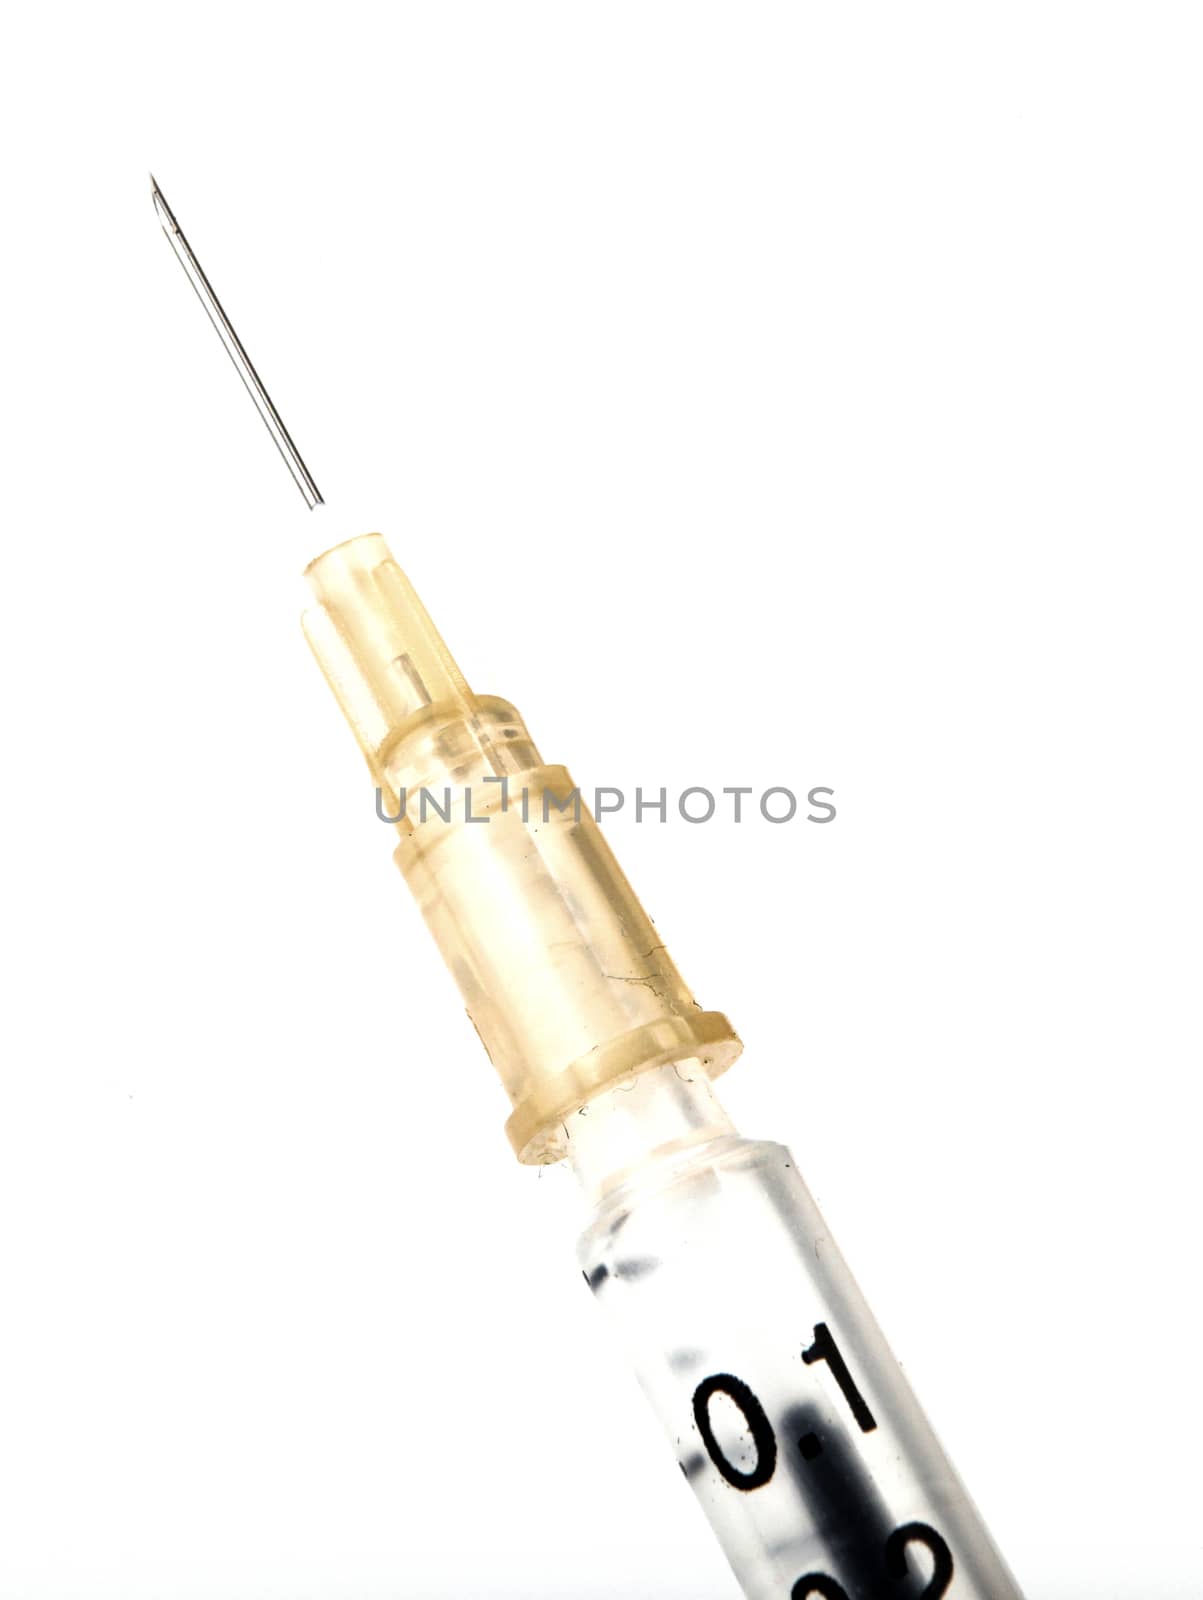 Syringe on white background by nenovbrothers